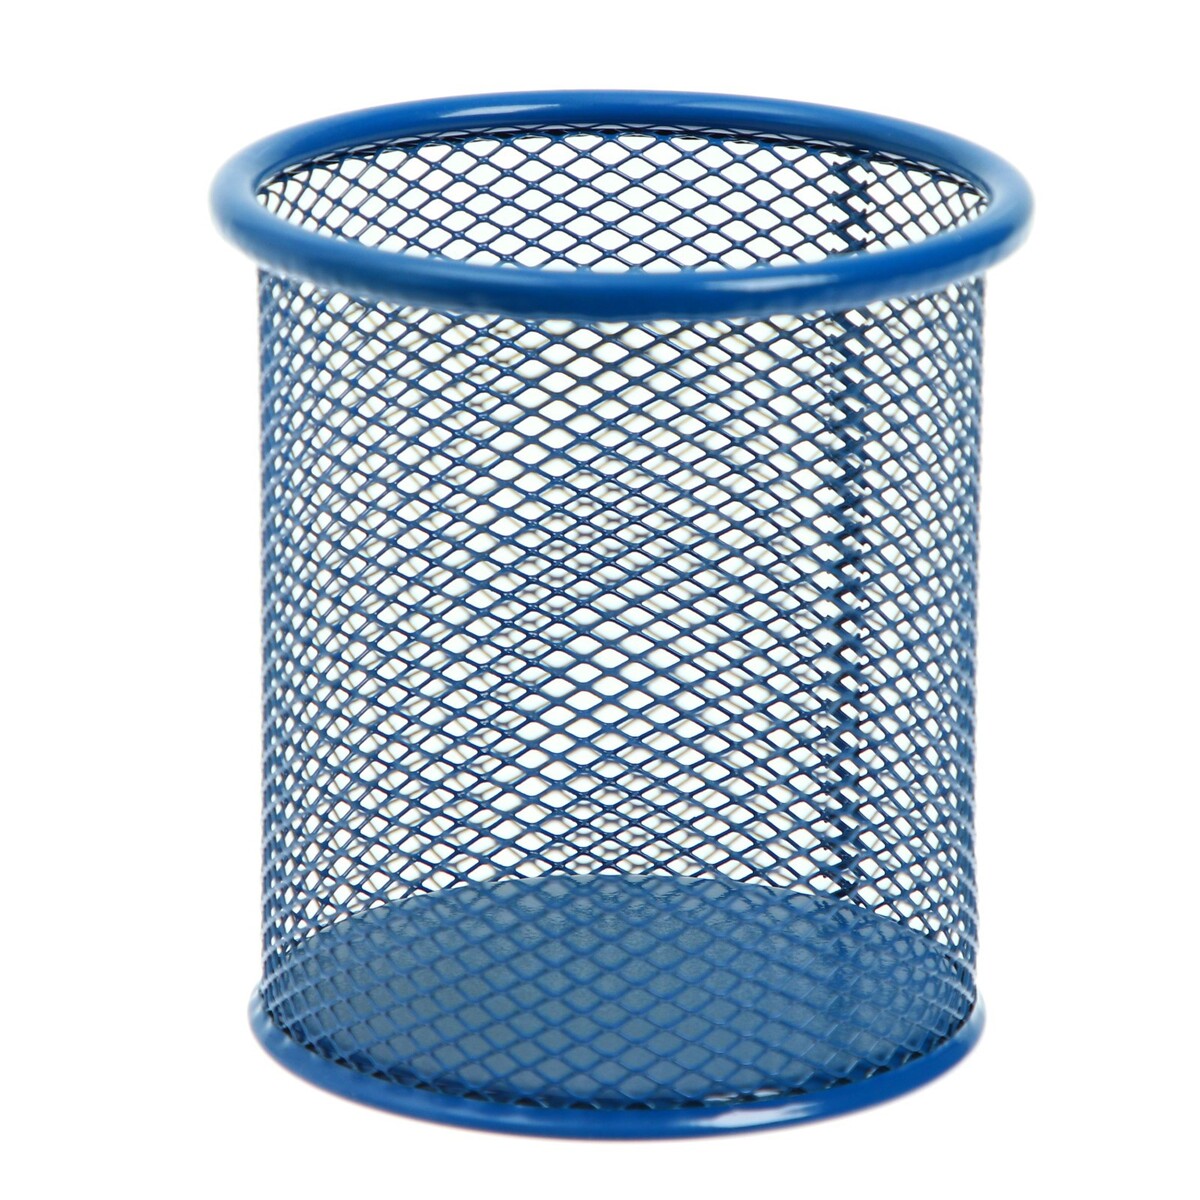 Стакан для пишущих принадлежностей круглый, металлическая сетка, синий стакан для пишущих принадлежностей 3 отделения сетка металлический